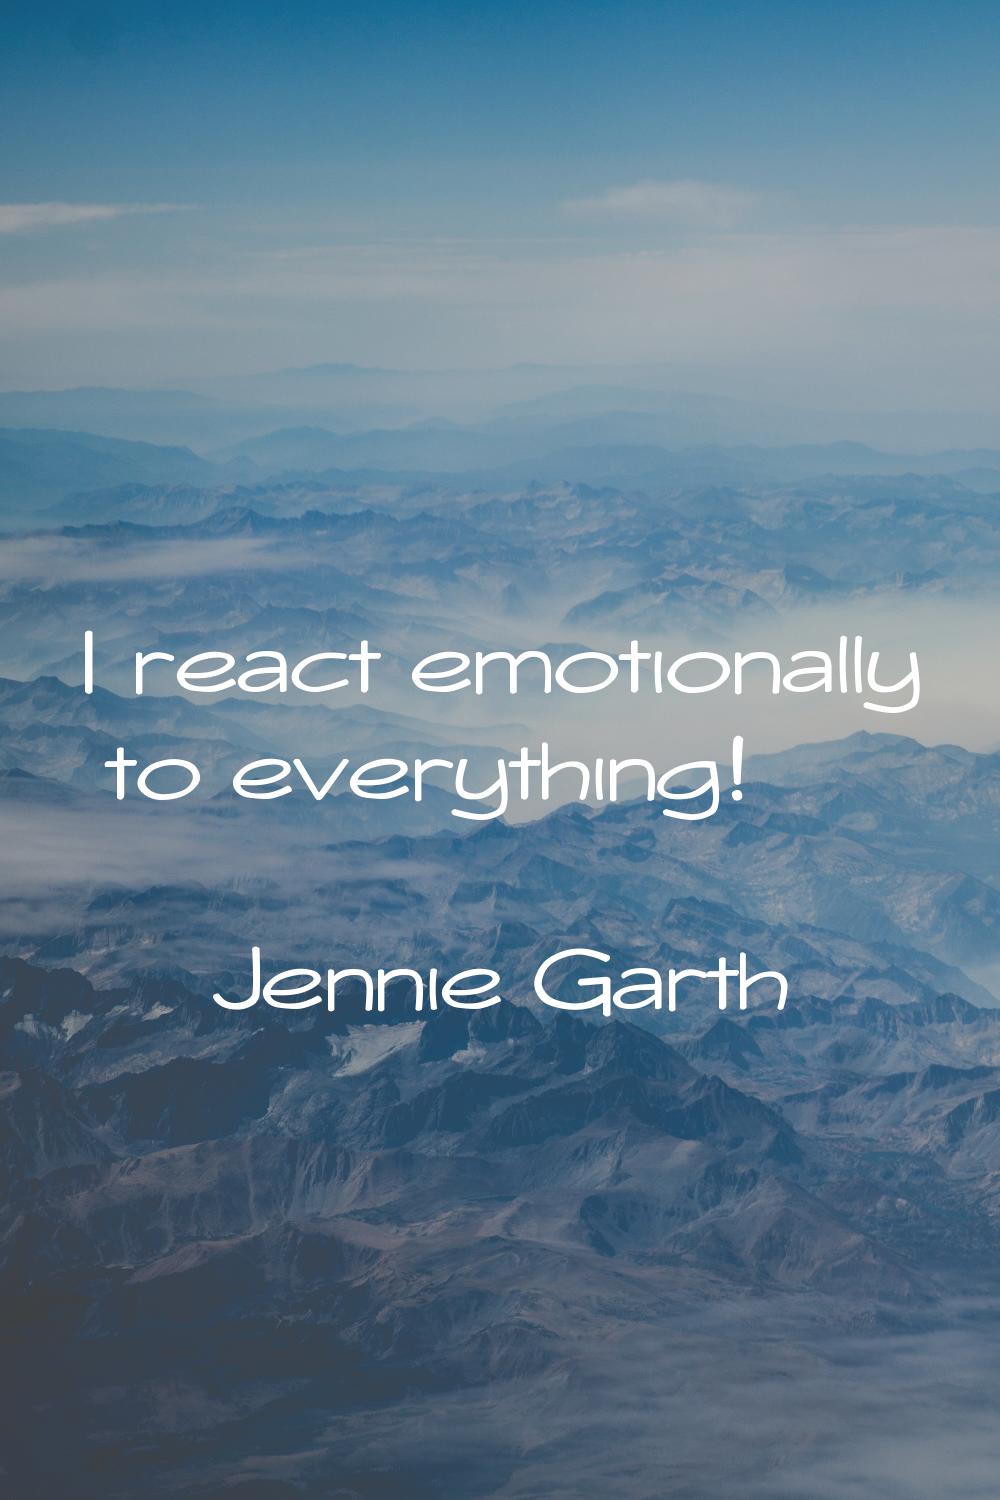 I react emotionally to everything!